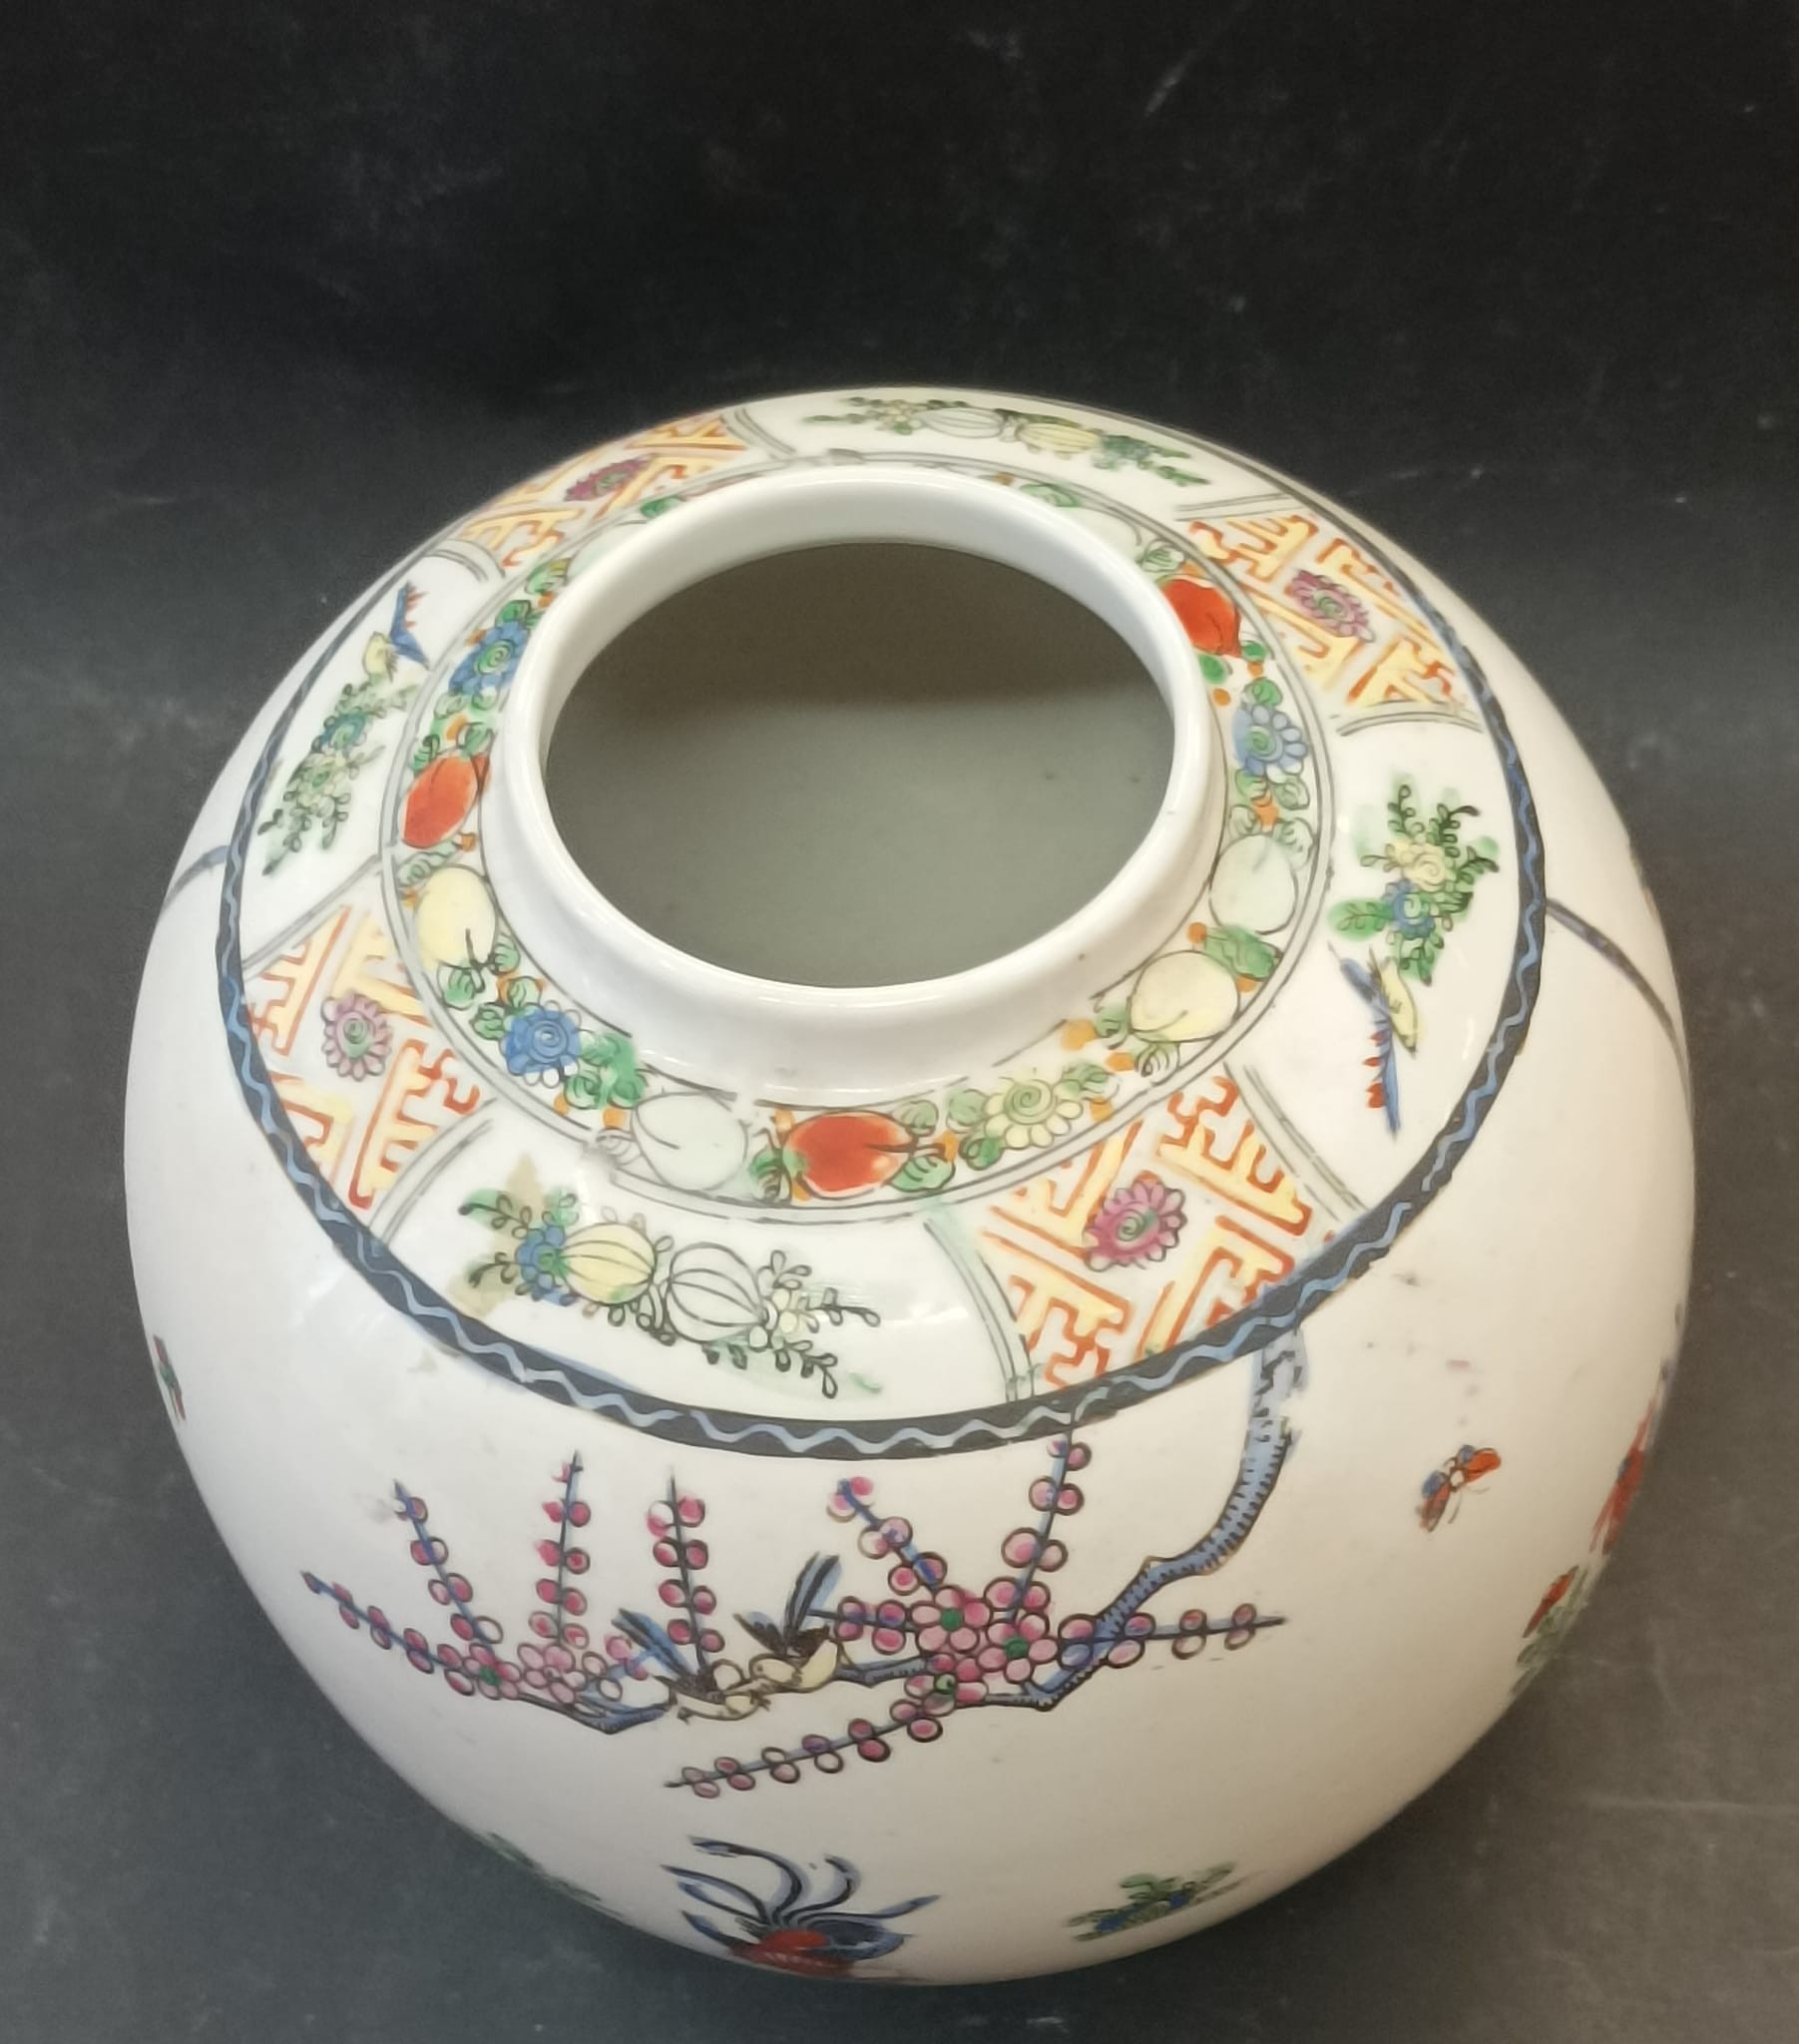 Jarra em porcelana policroma, com decoração floral e galos